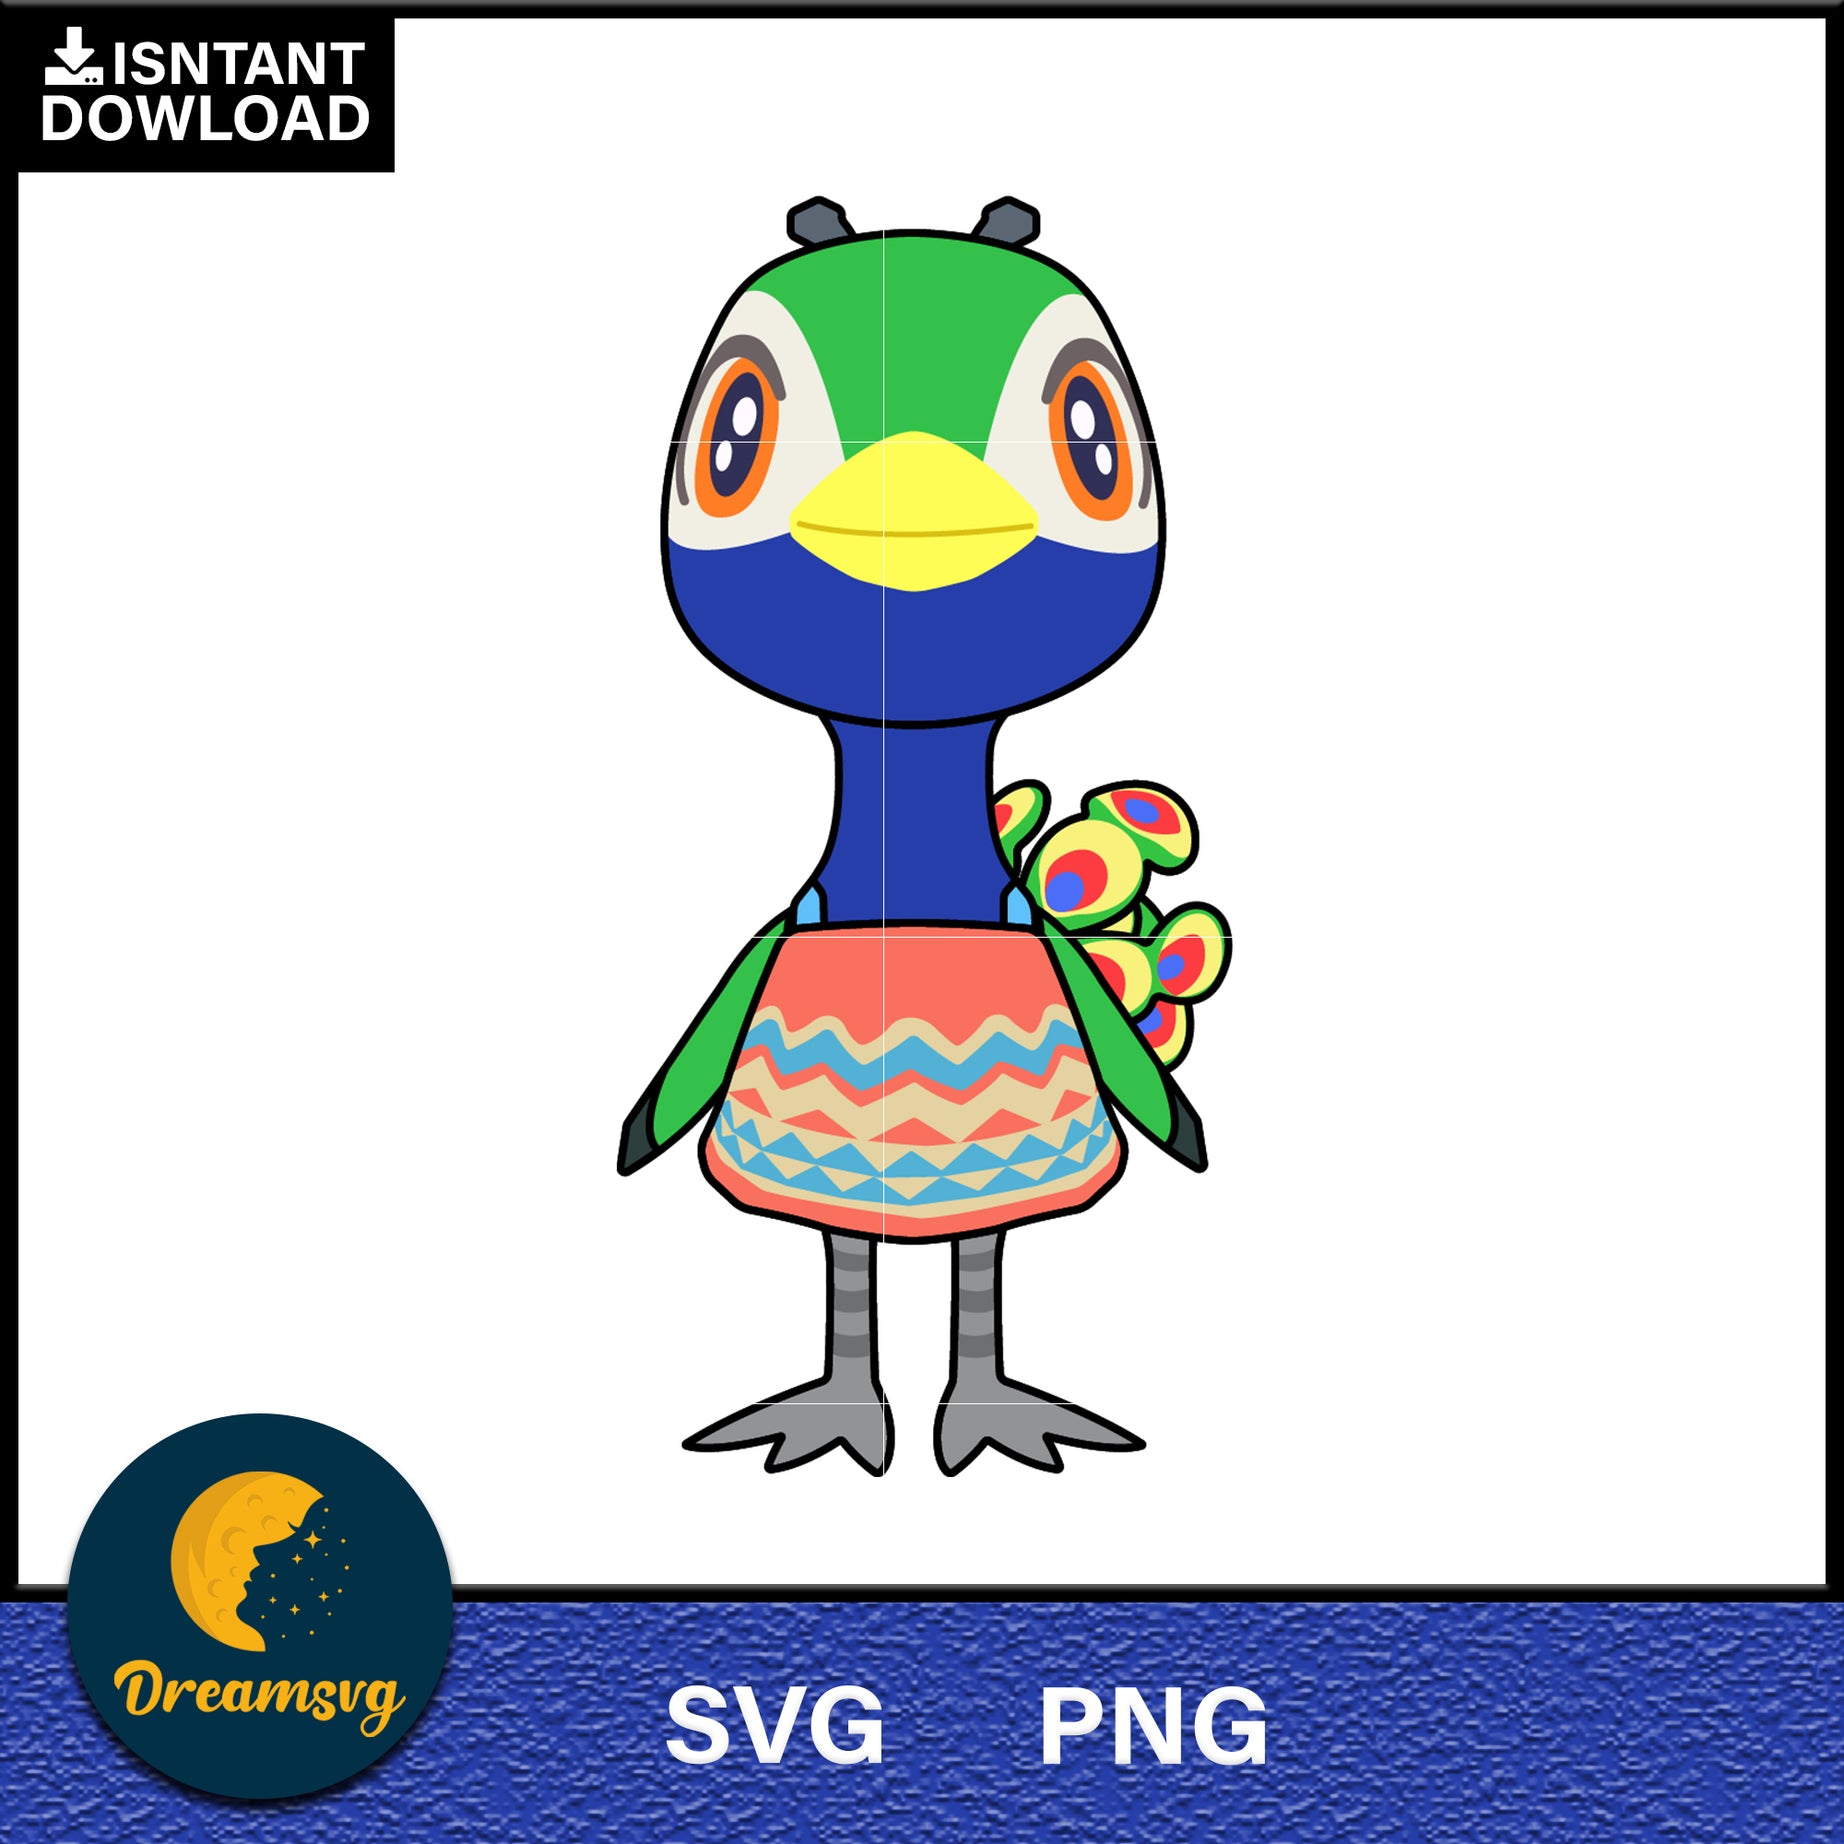 Julia Animal Crossing Svg, Animal Crossing Svg, Animal Crossing Png, Cartoon svg, svg, png digital file